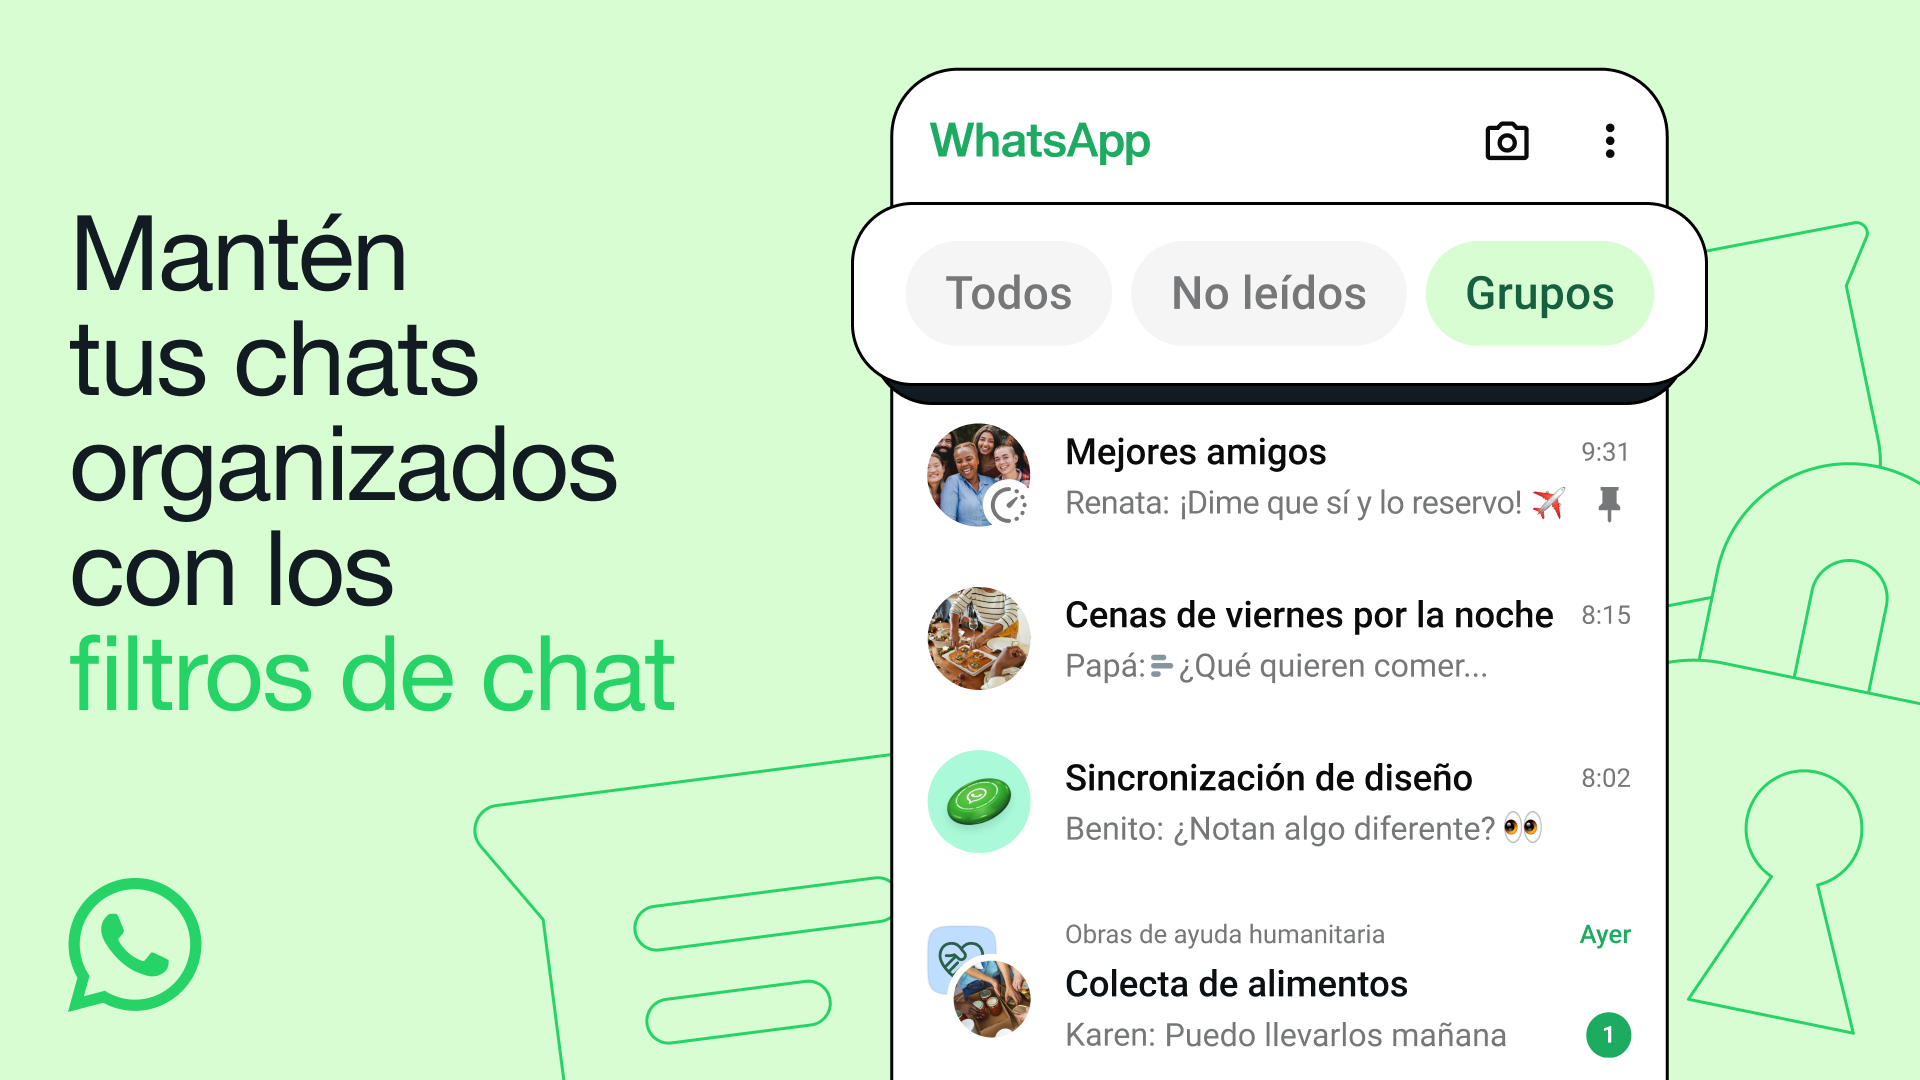 whatsapp: nuevo filtro para organizar mejor los chats